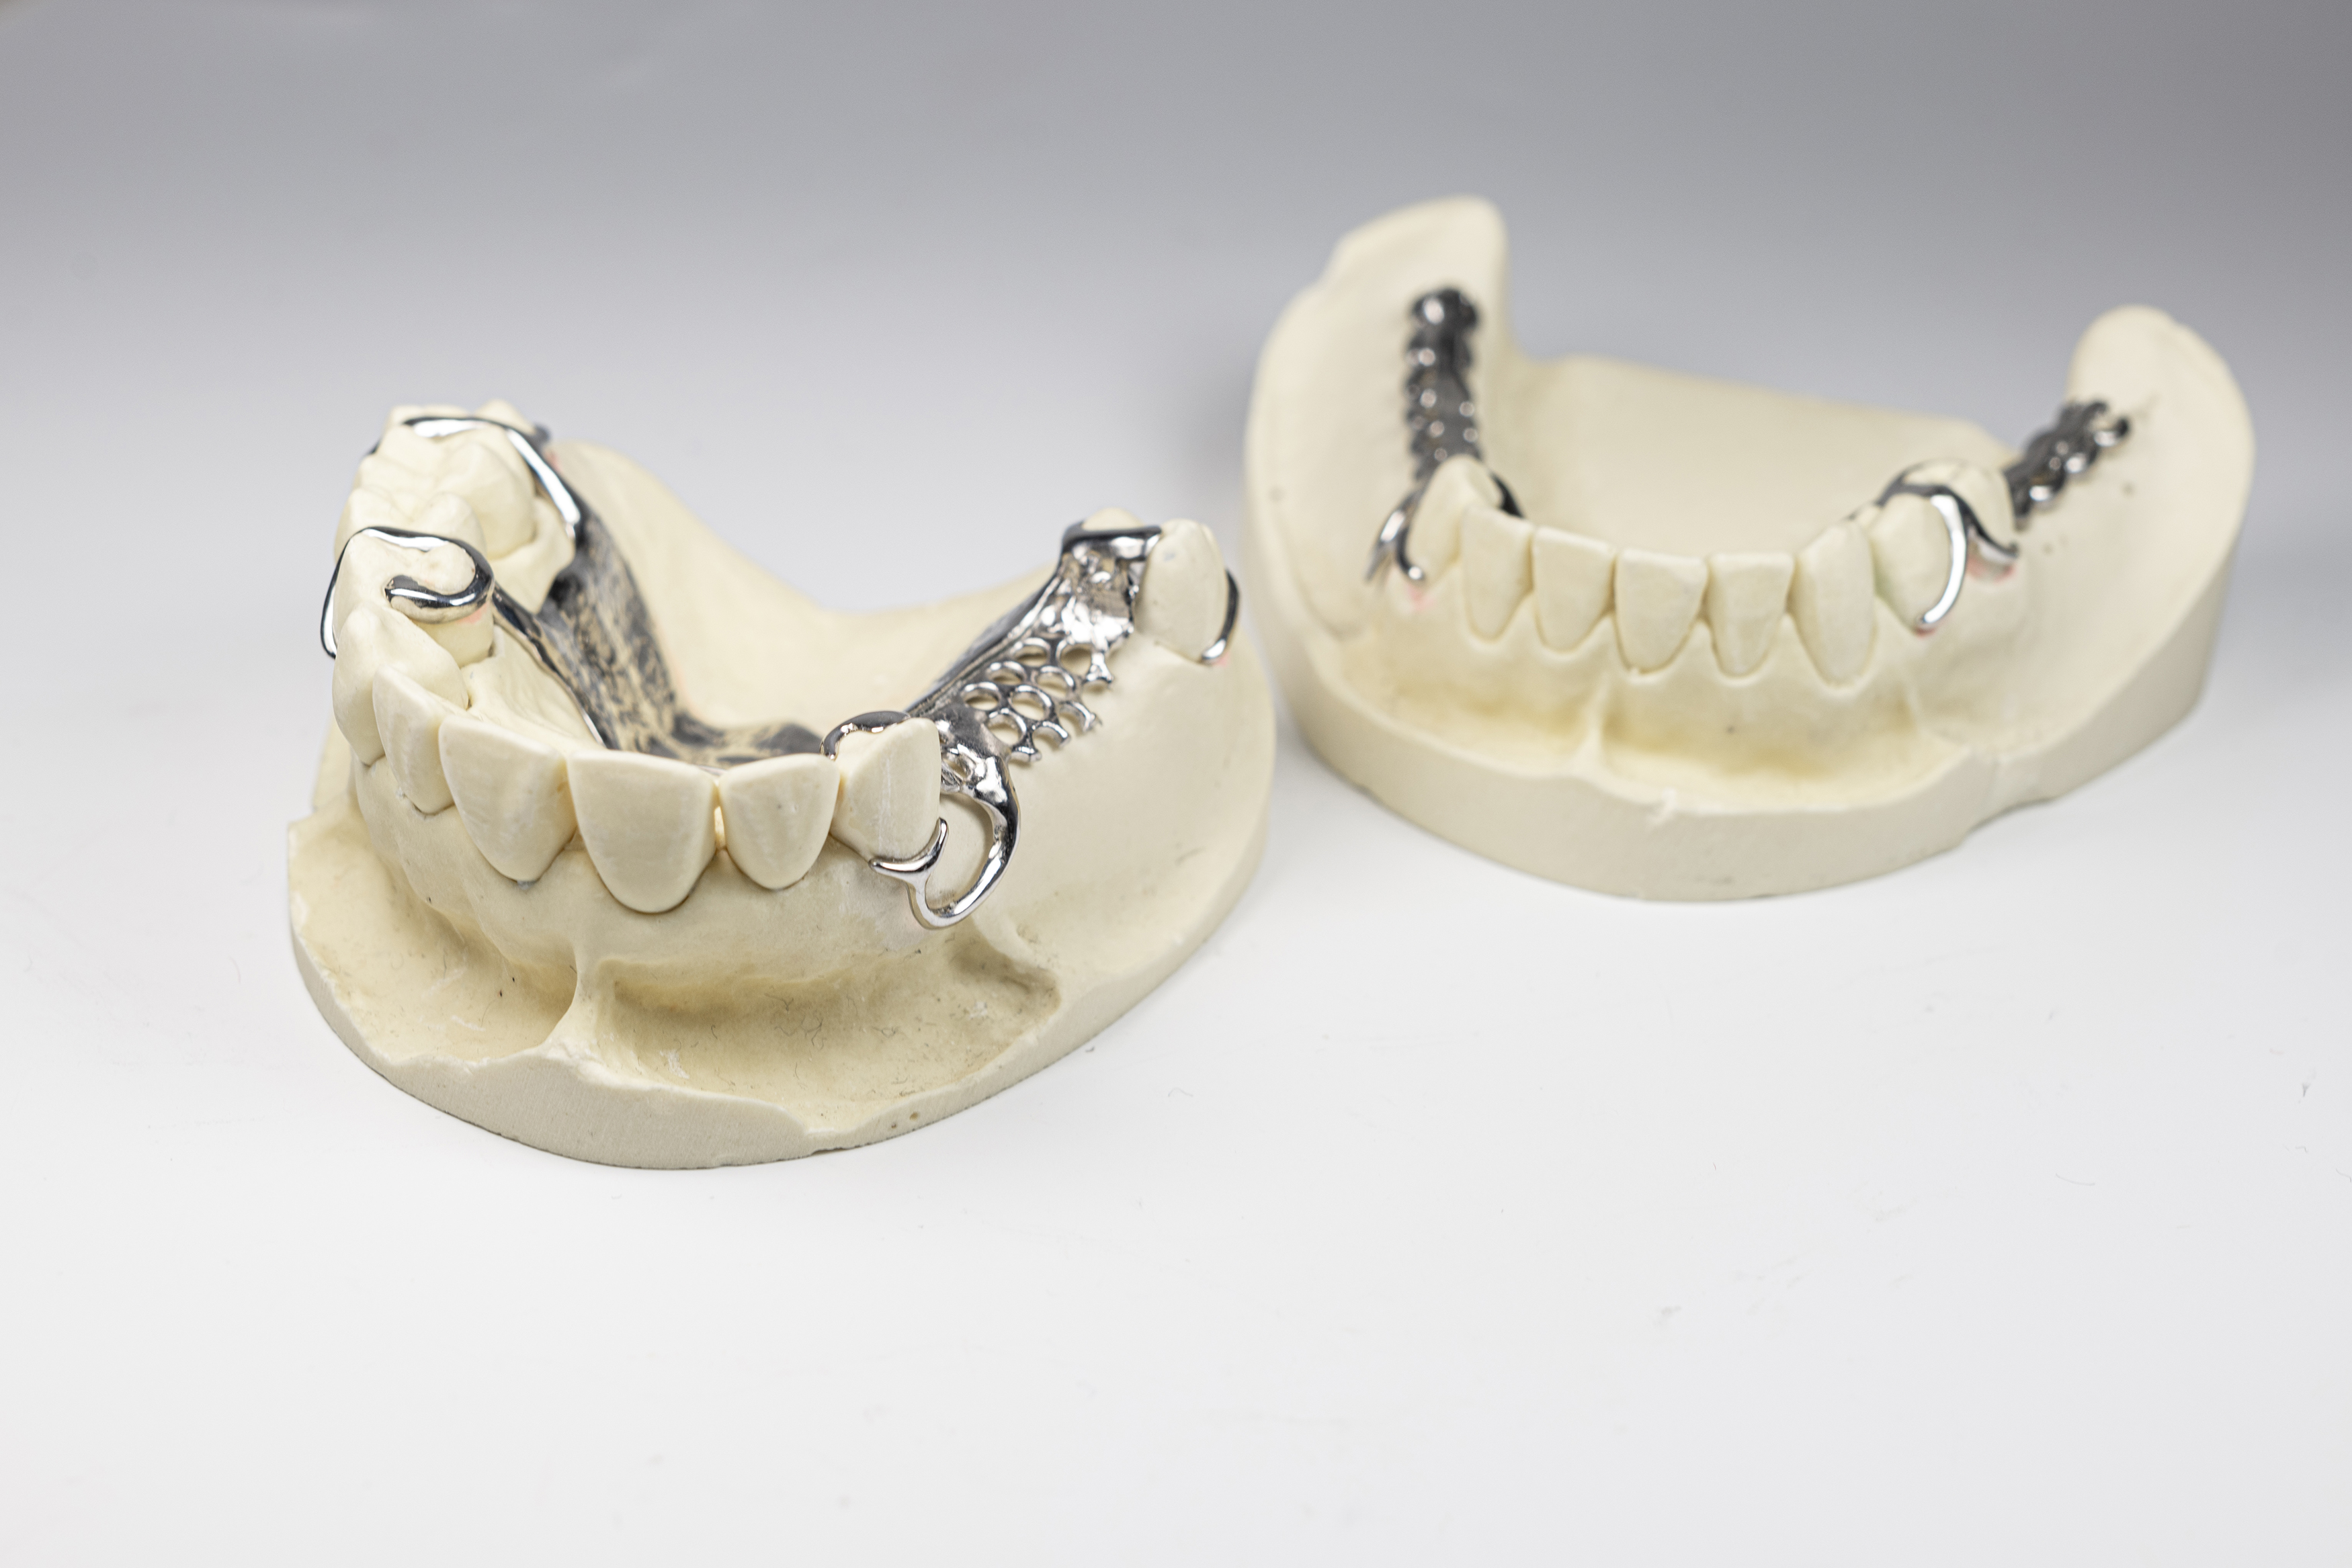 Zahnprothesen wie diese entstehen aktuell in aufwendiger Handarbeit. »ATeM« will die Herstellung komfortablerer Prothesen schneller, kostensparender und ressourcenschonender gestalten.